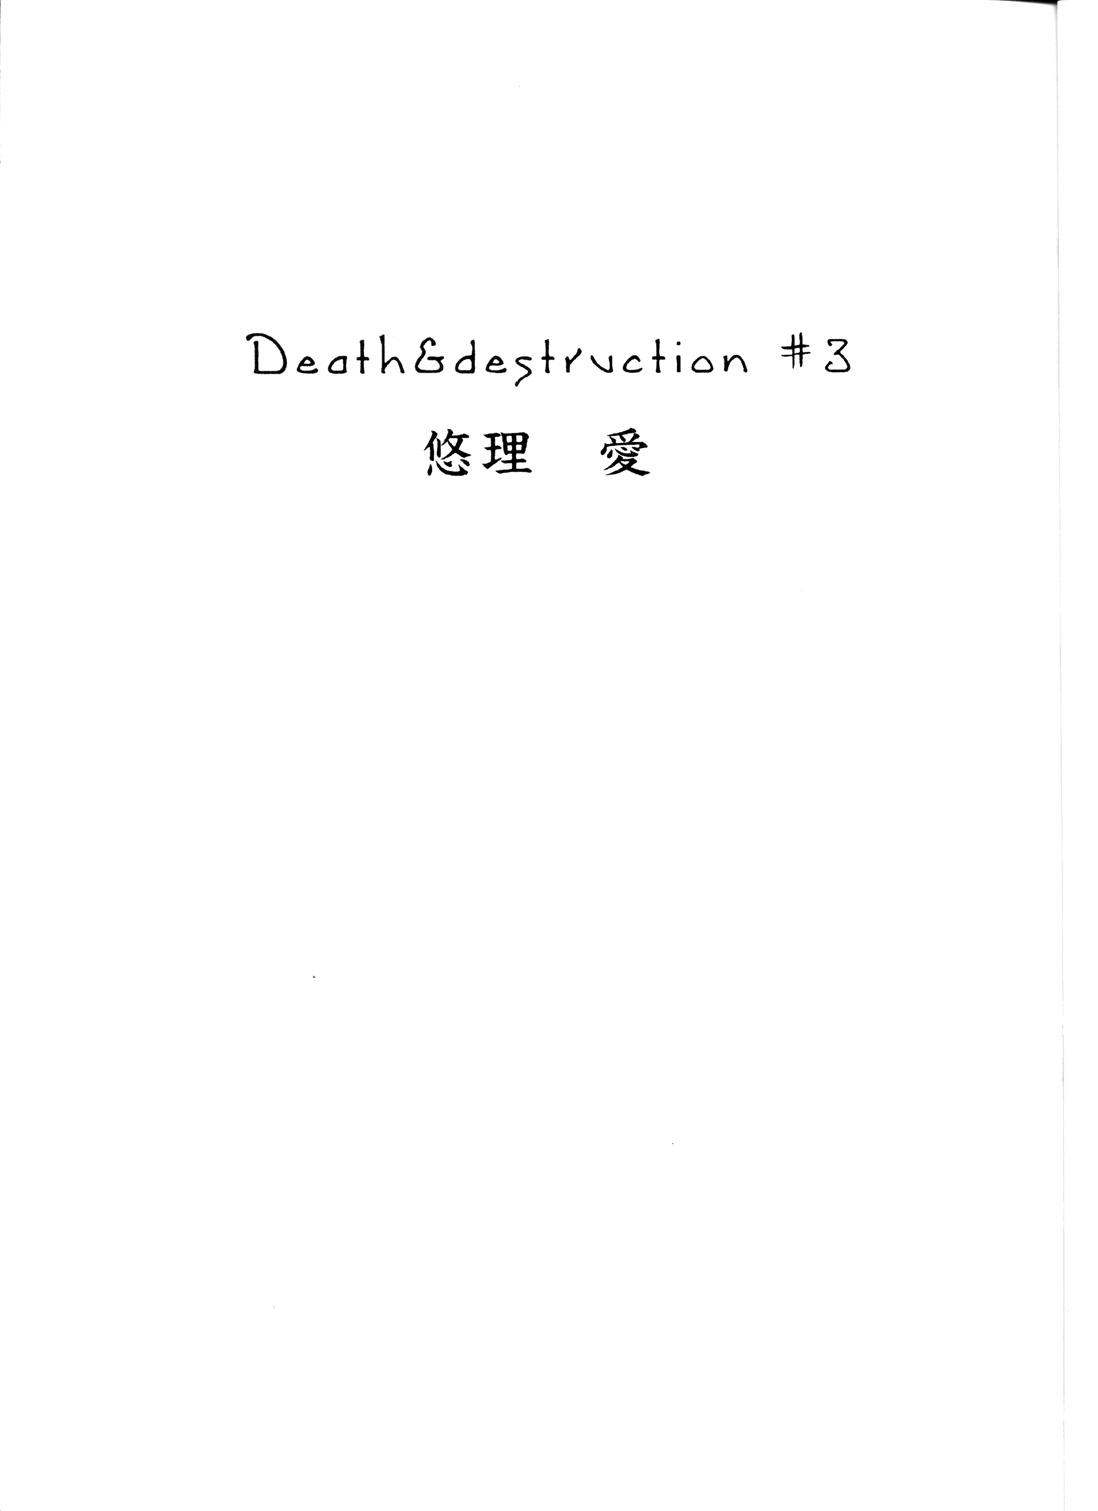 Death & Destruction #3 2